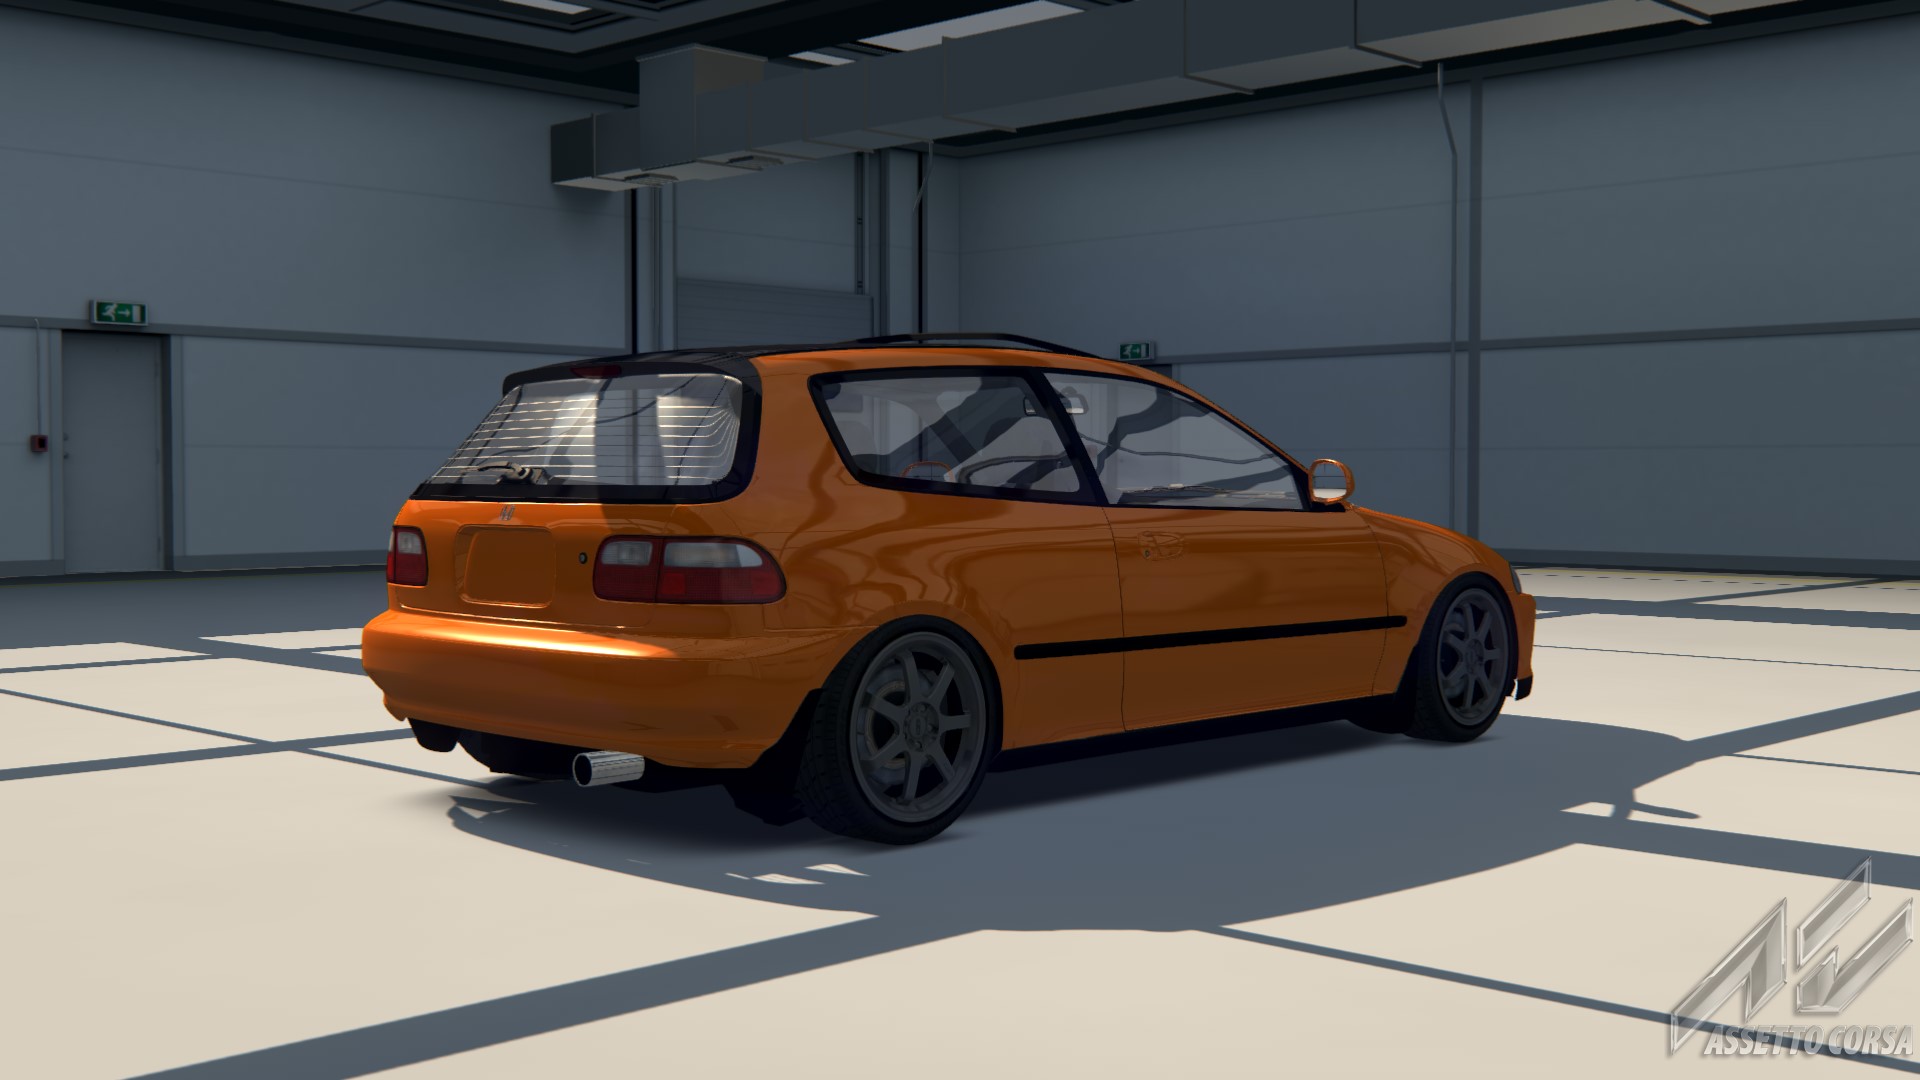 Civic VTi EG6, skin Orange